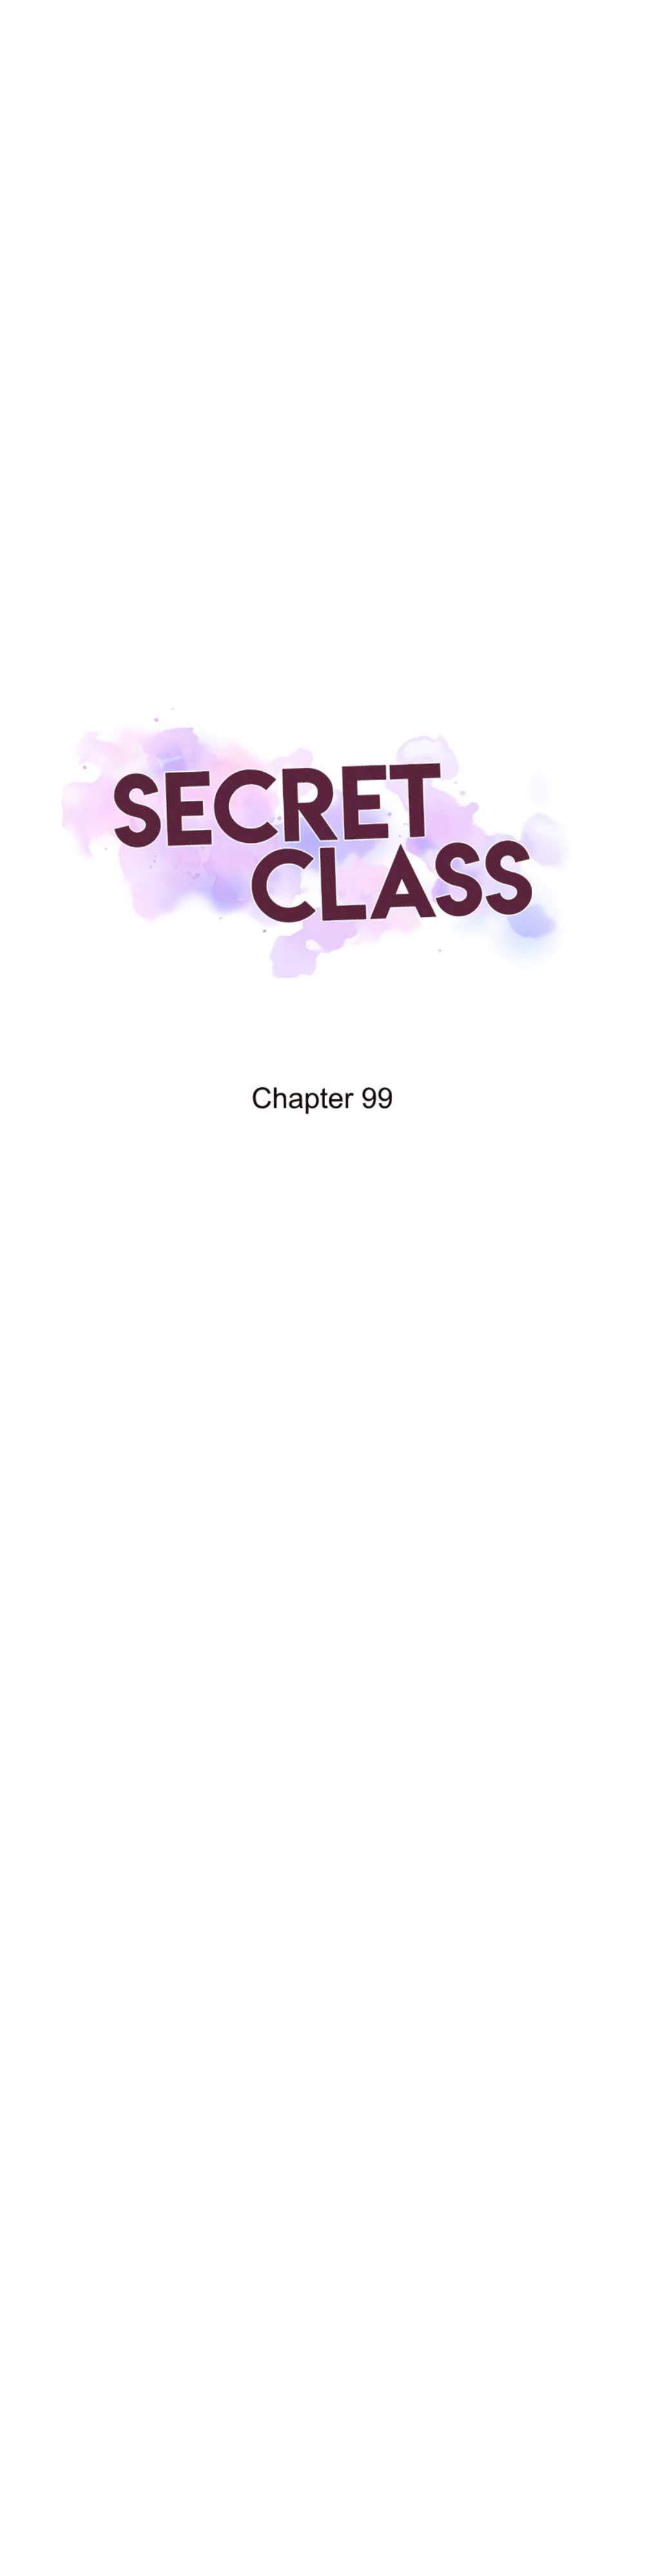 Secret Class - Lớp Học Bí Mật Chapter 99 - Trang 3